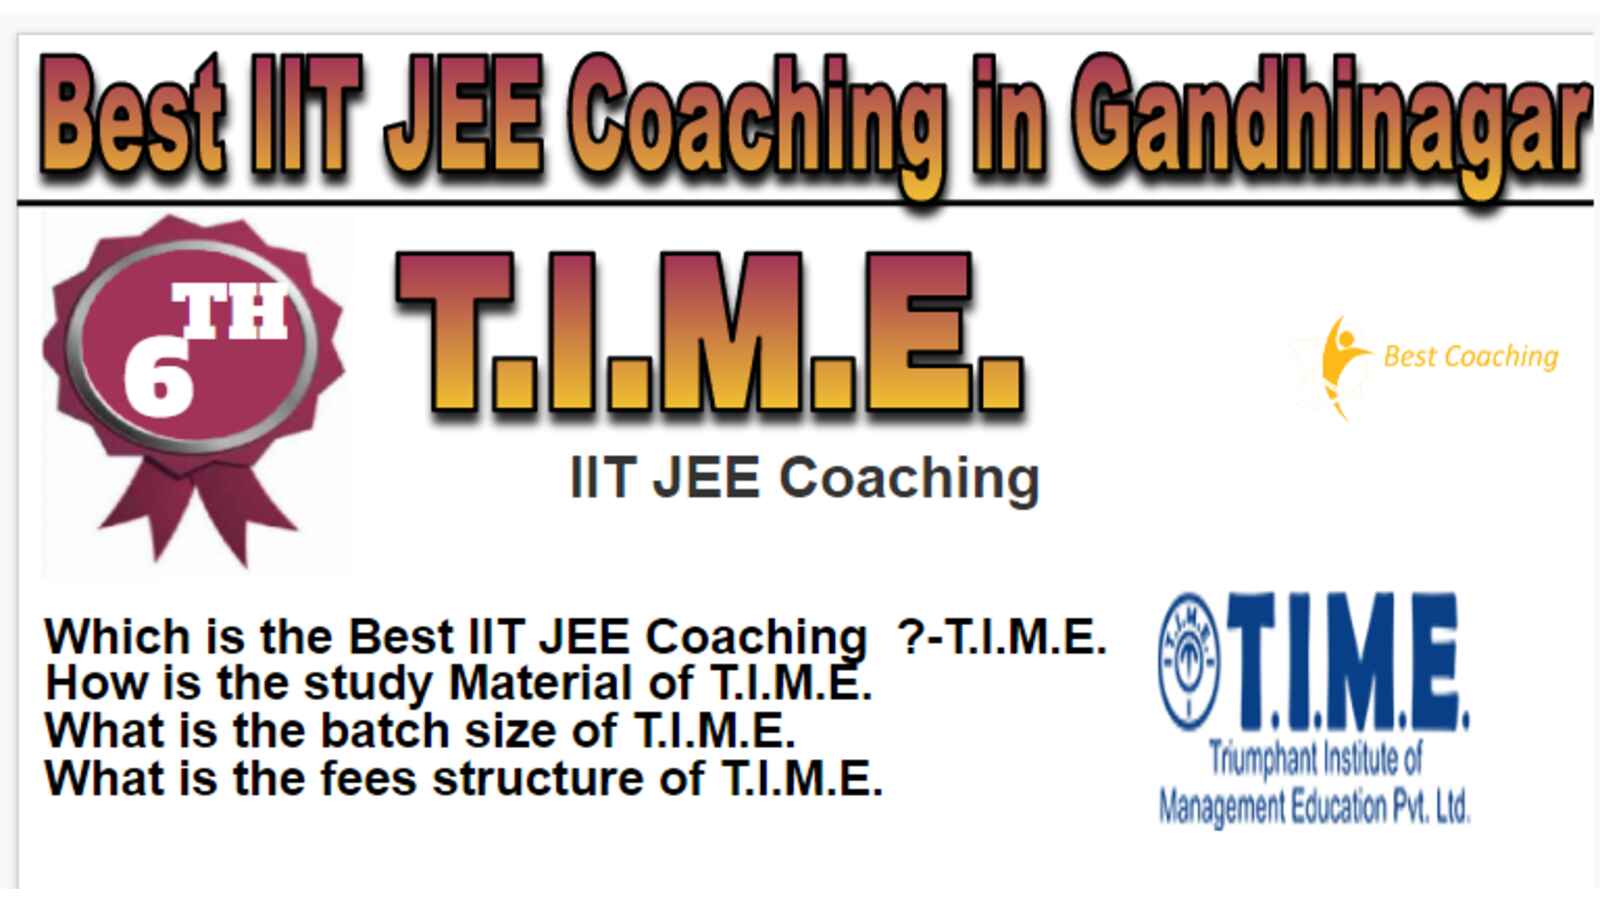 Rank 6 Best IIT JEE Coaching in Gandhinagar